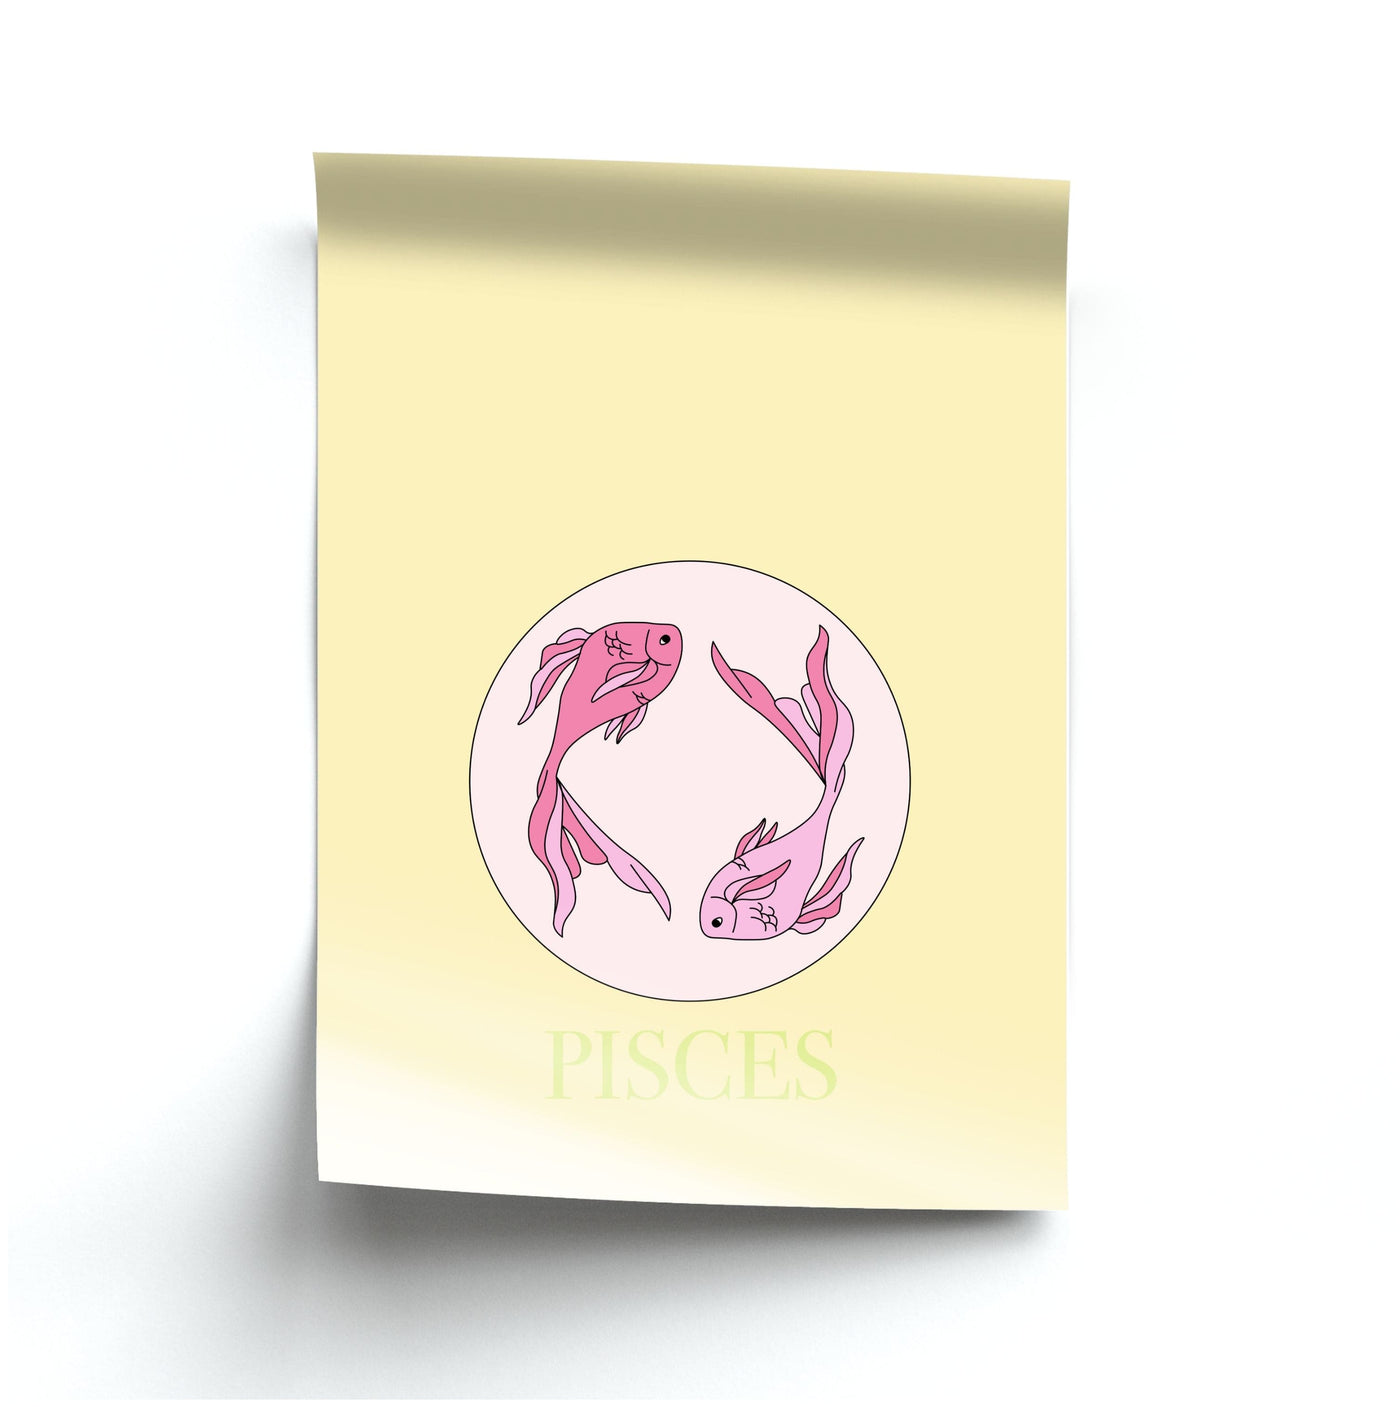 Pisces - Tarot Cards Poster